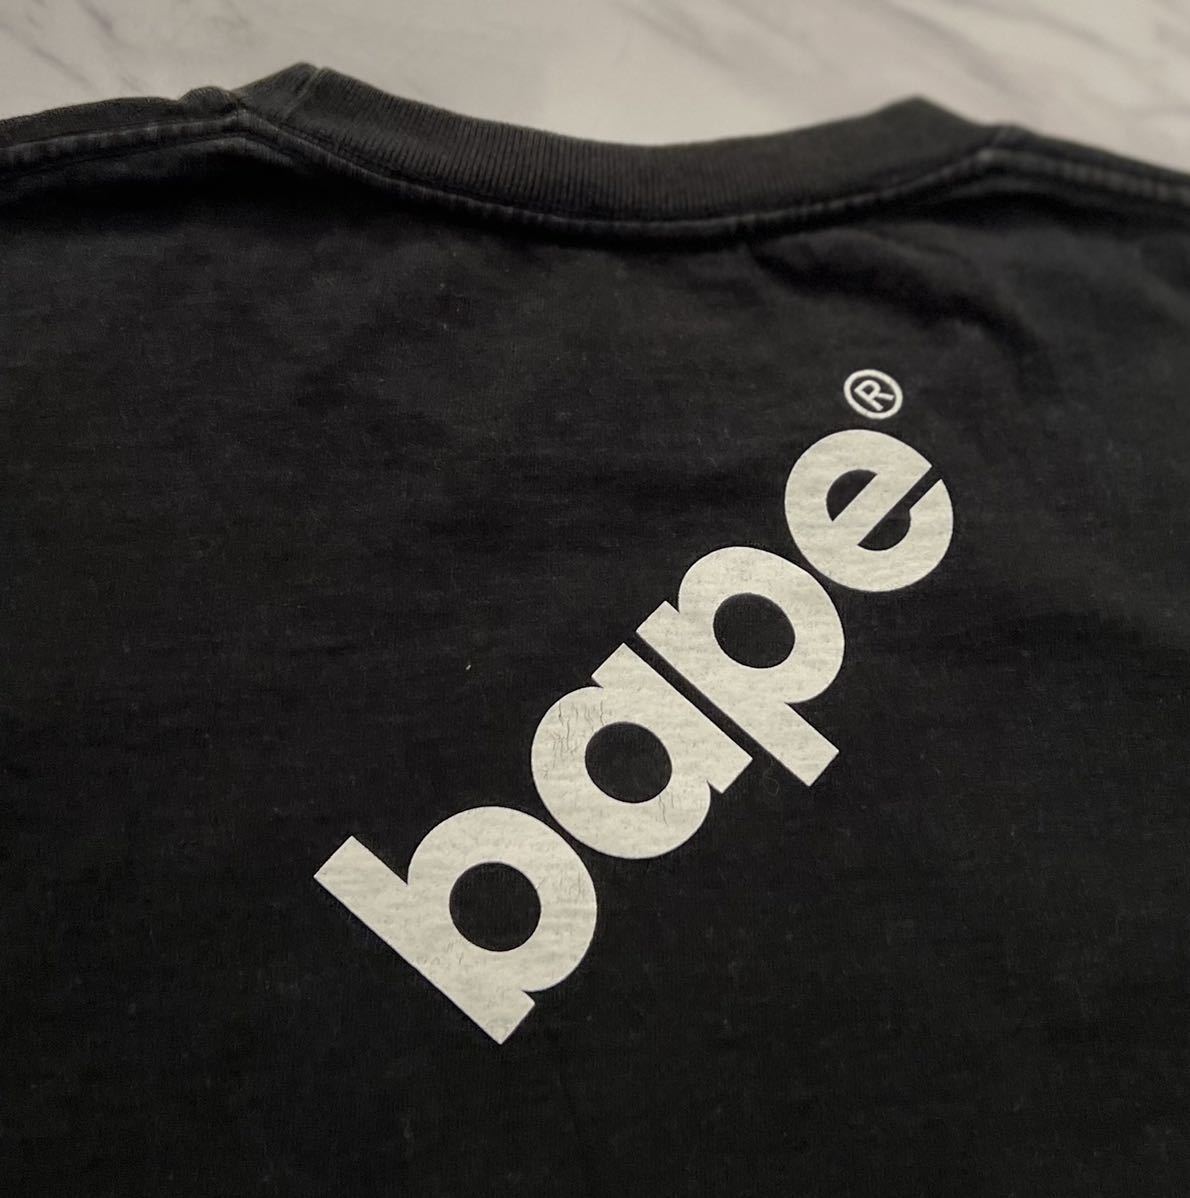 激レア 希少 名作 BAPE 90s vintage ダイアゴナル ストライプ グラフィック プリント Tシャツ M ブラック ベイプ APE 初期 NIGO デザイン_画像6